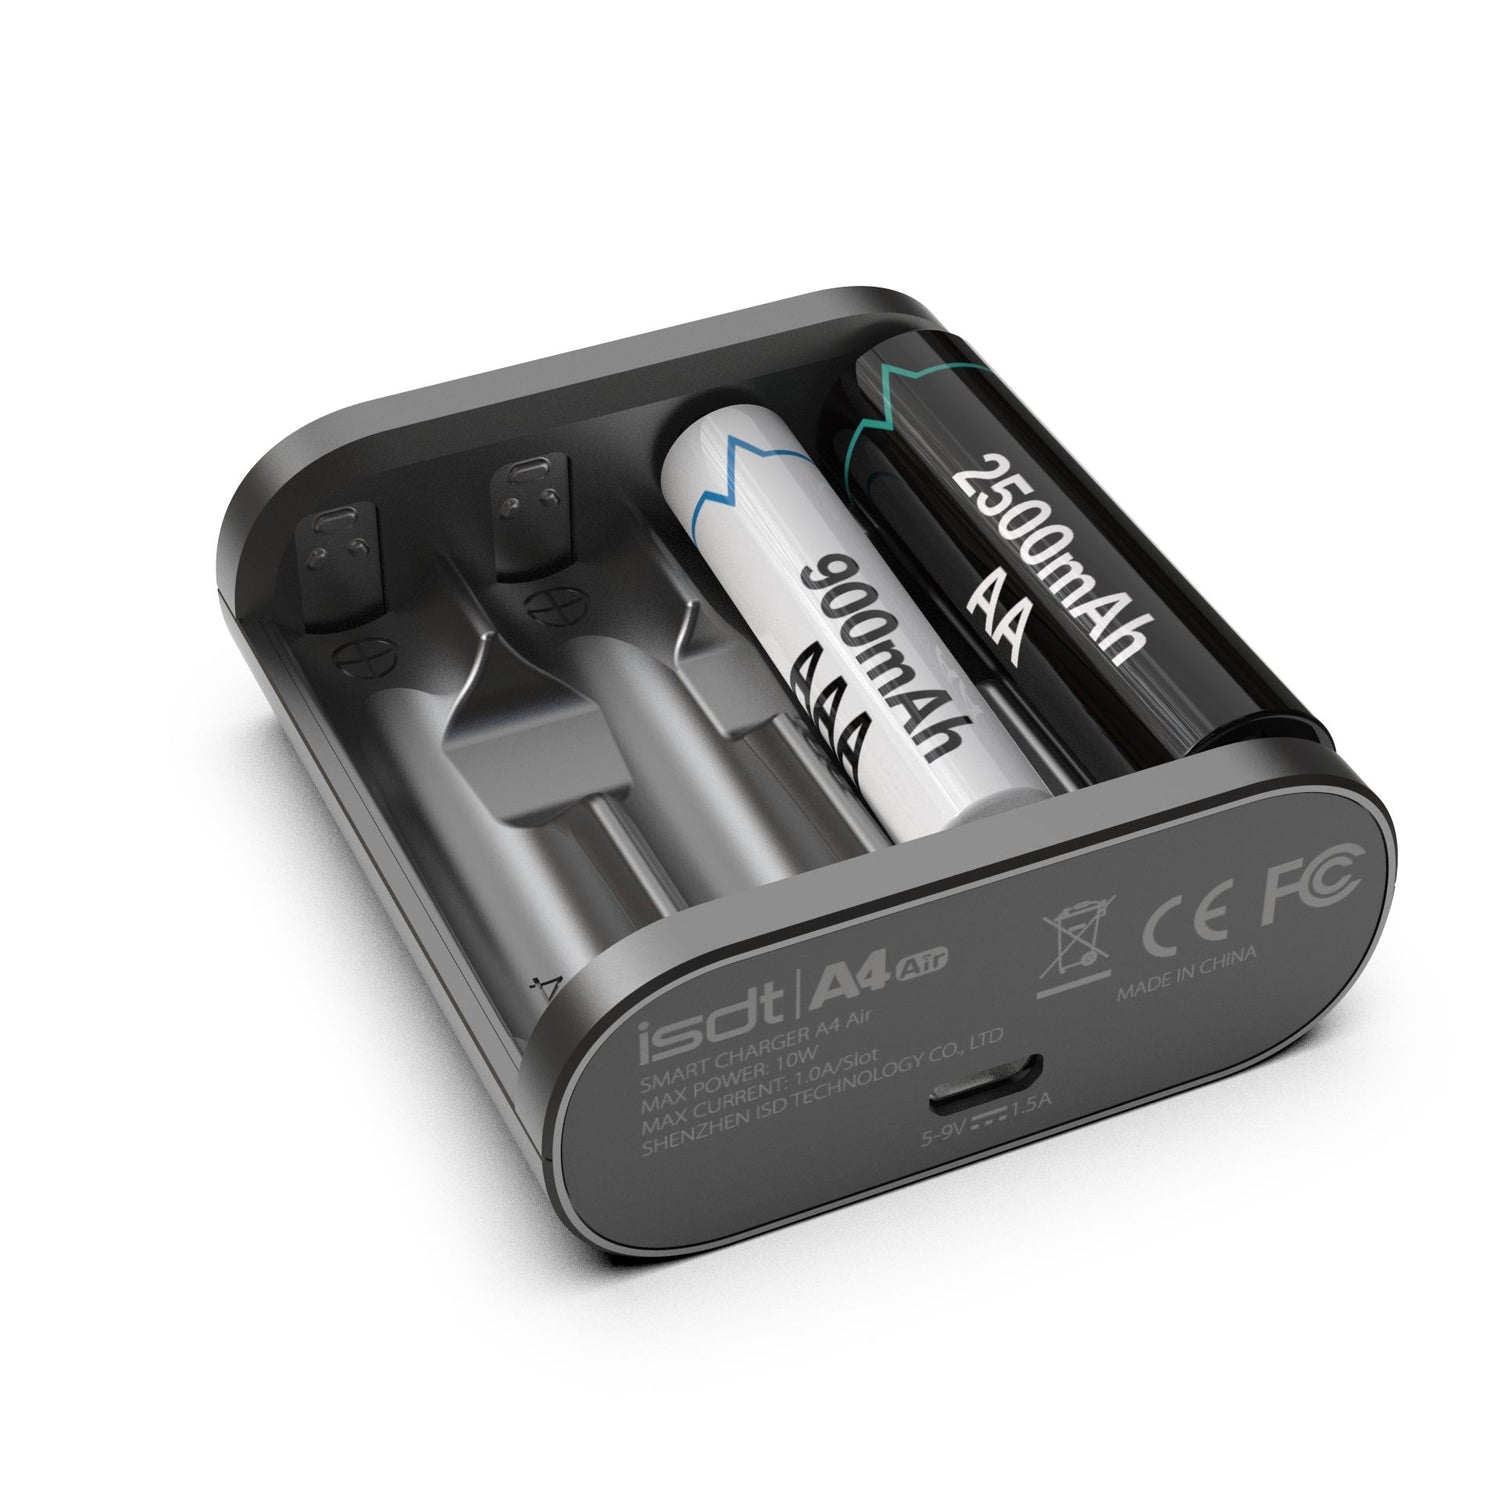 Carregador de bateria A4 Air, carregador de bateria AA/AAA inteligente com função de conexão Bluetooth